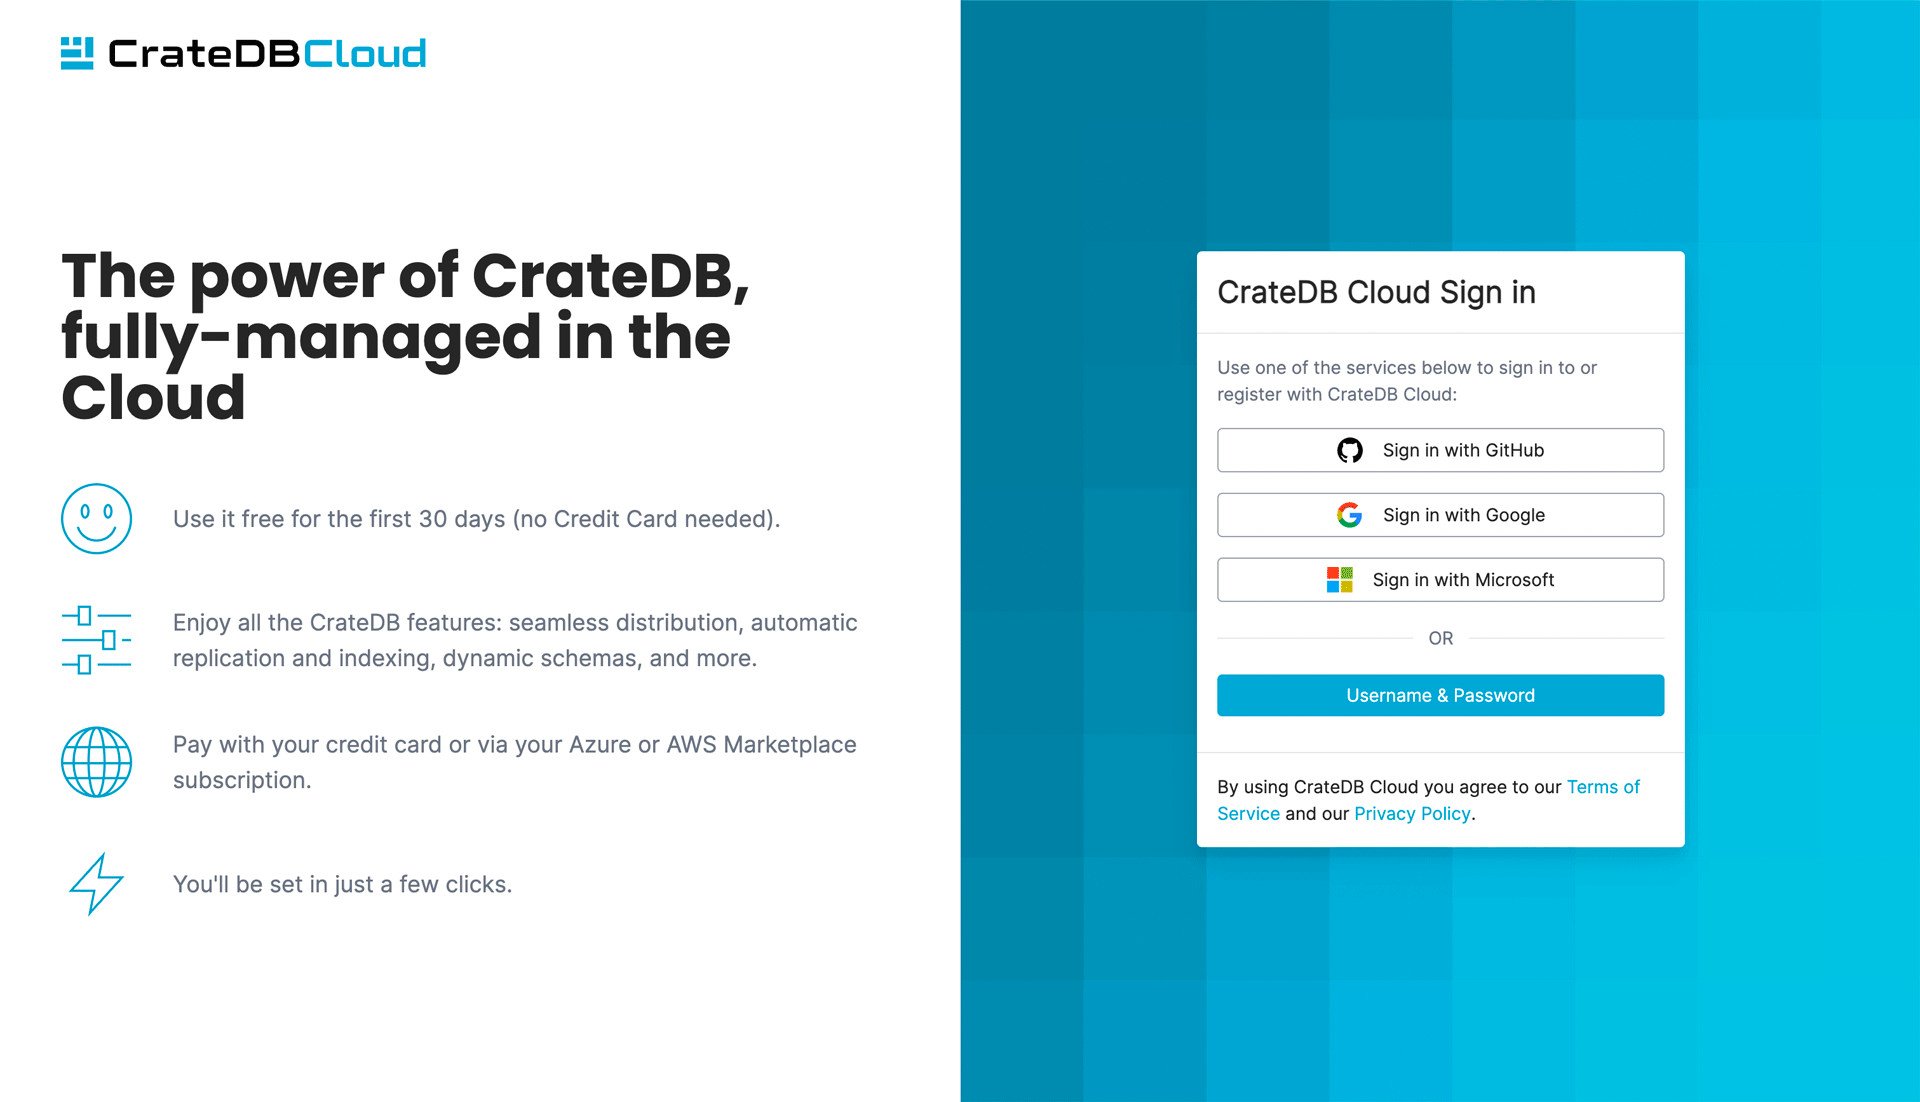 CrateDB Cloud Sign-In